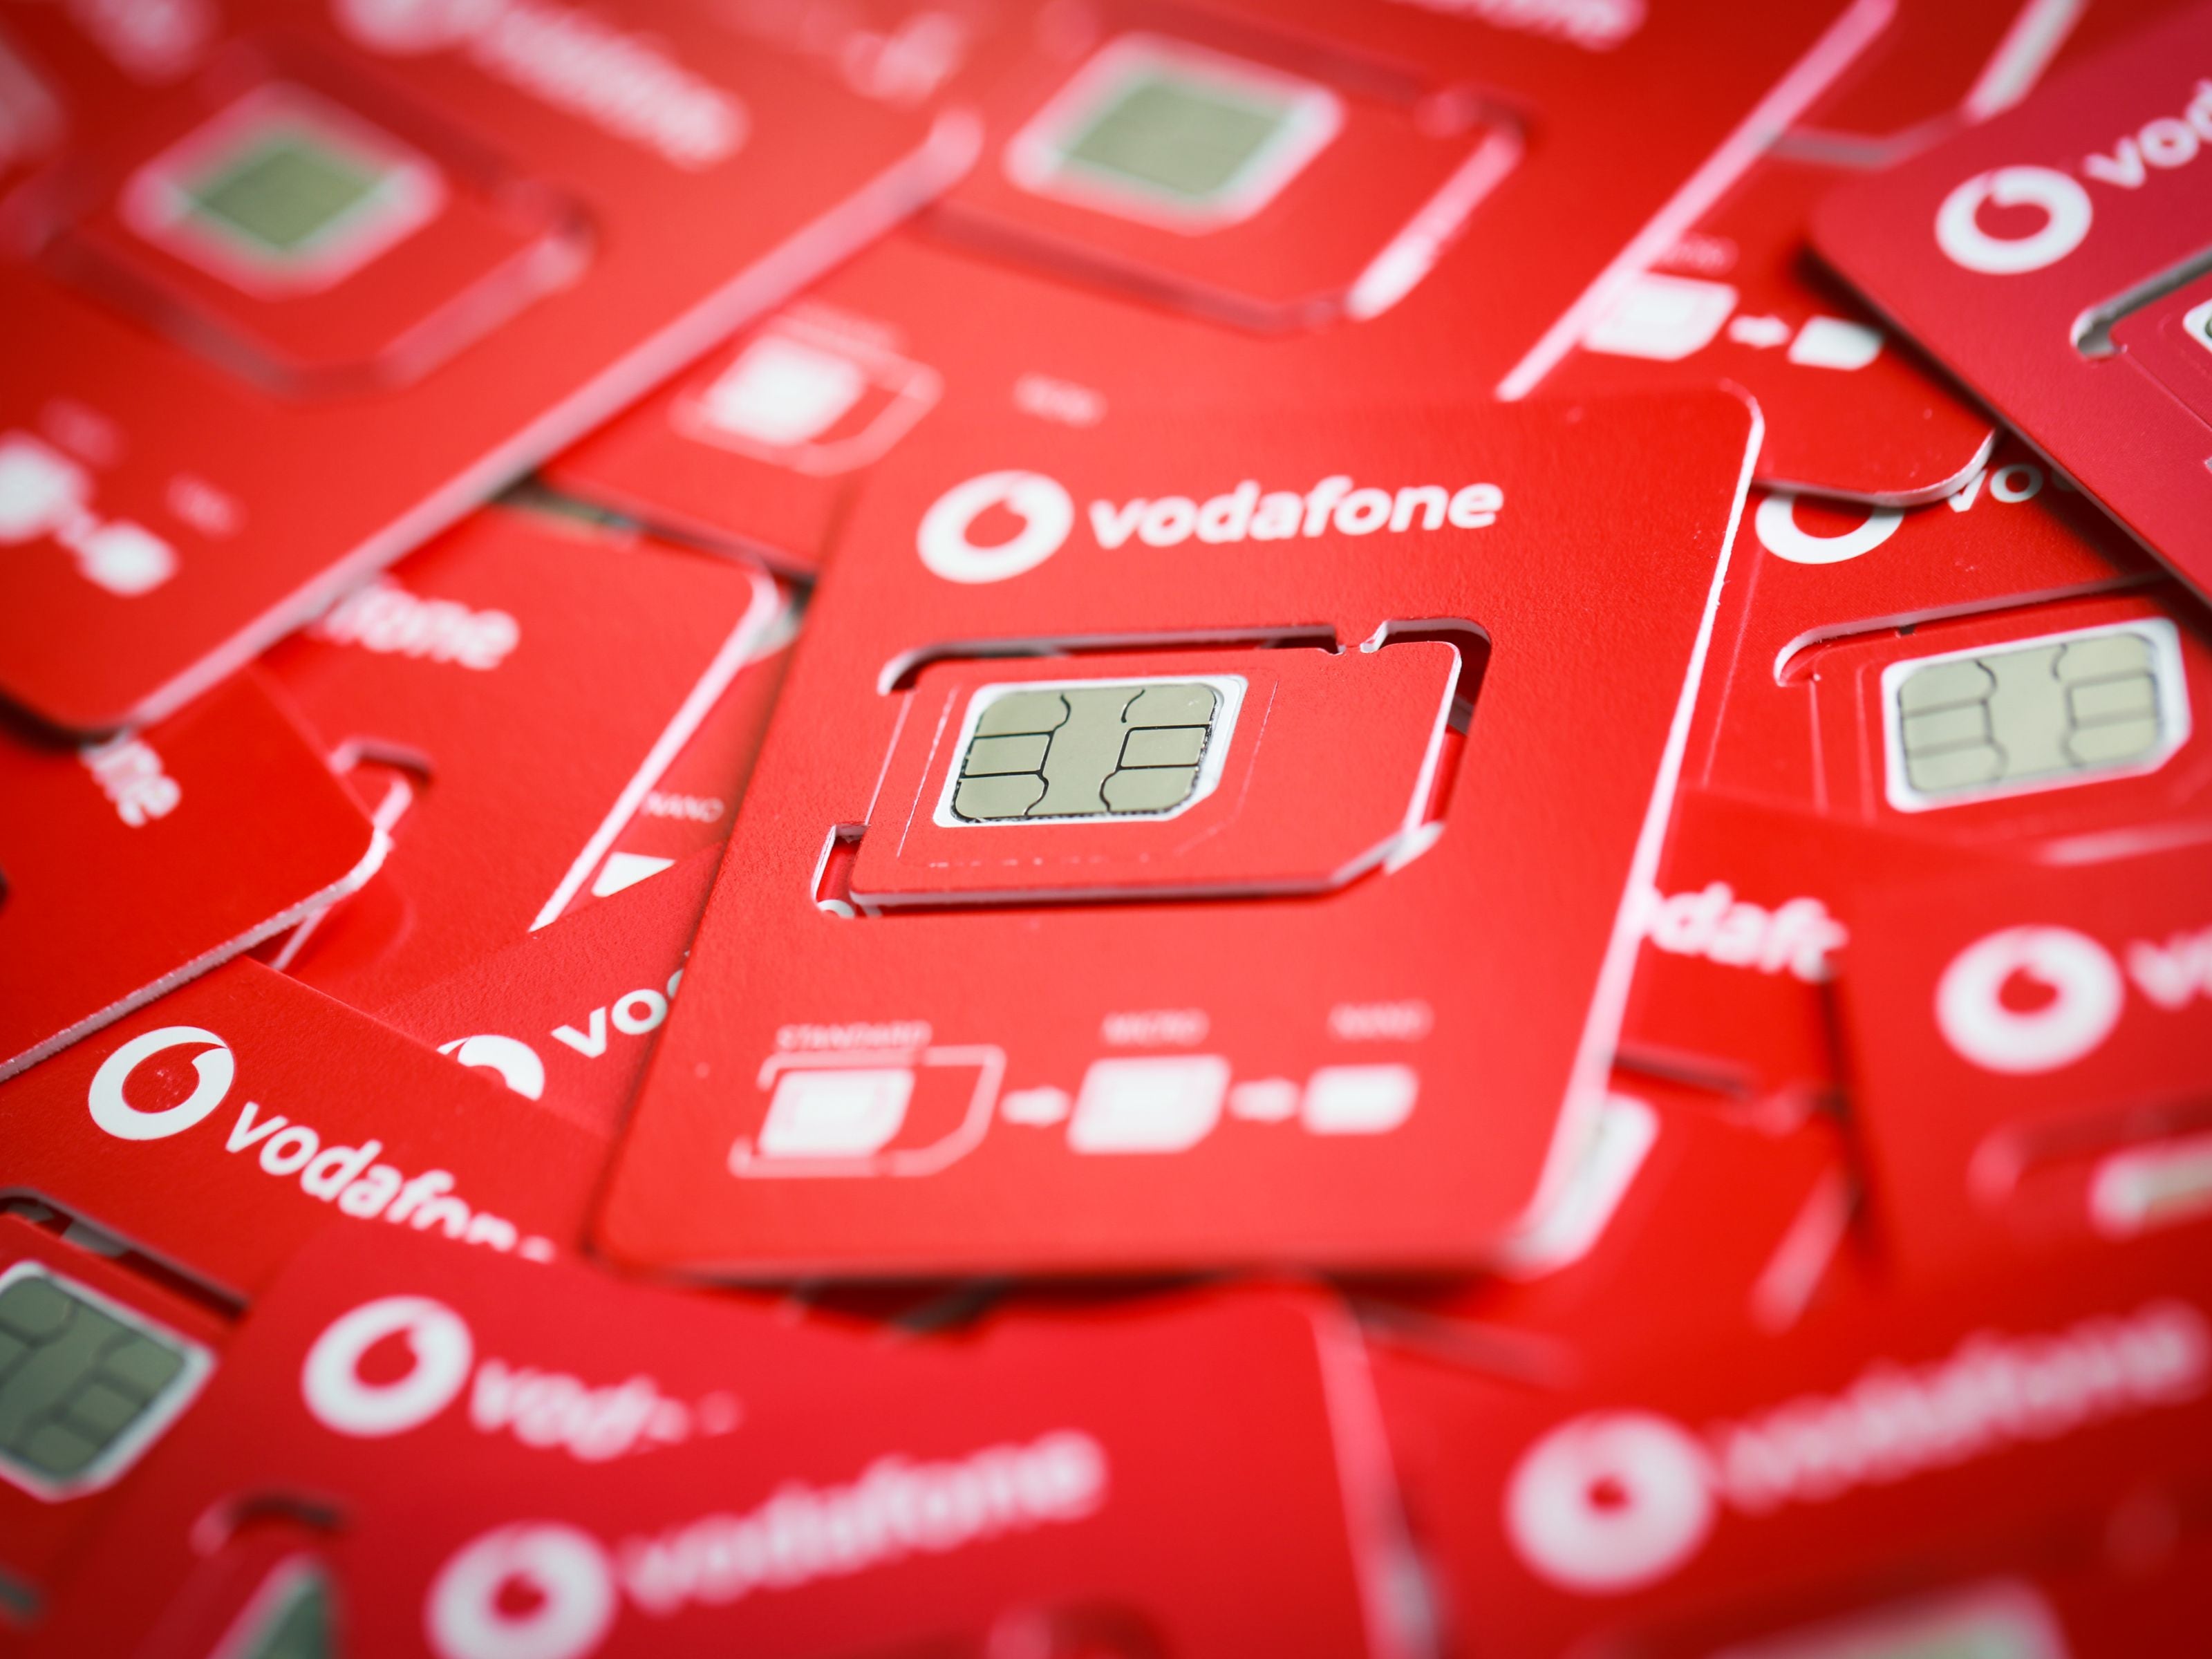 #Vodafone stellt überraschend neuen Handytarif vor und hinterlässt Fragezeichen